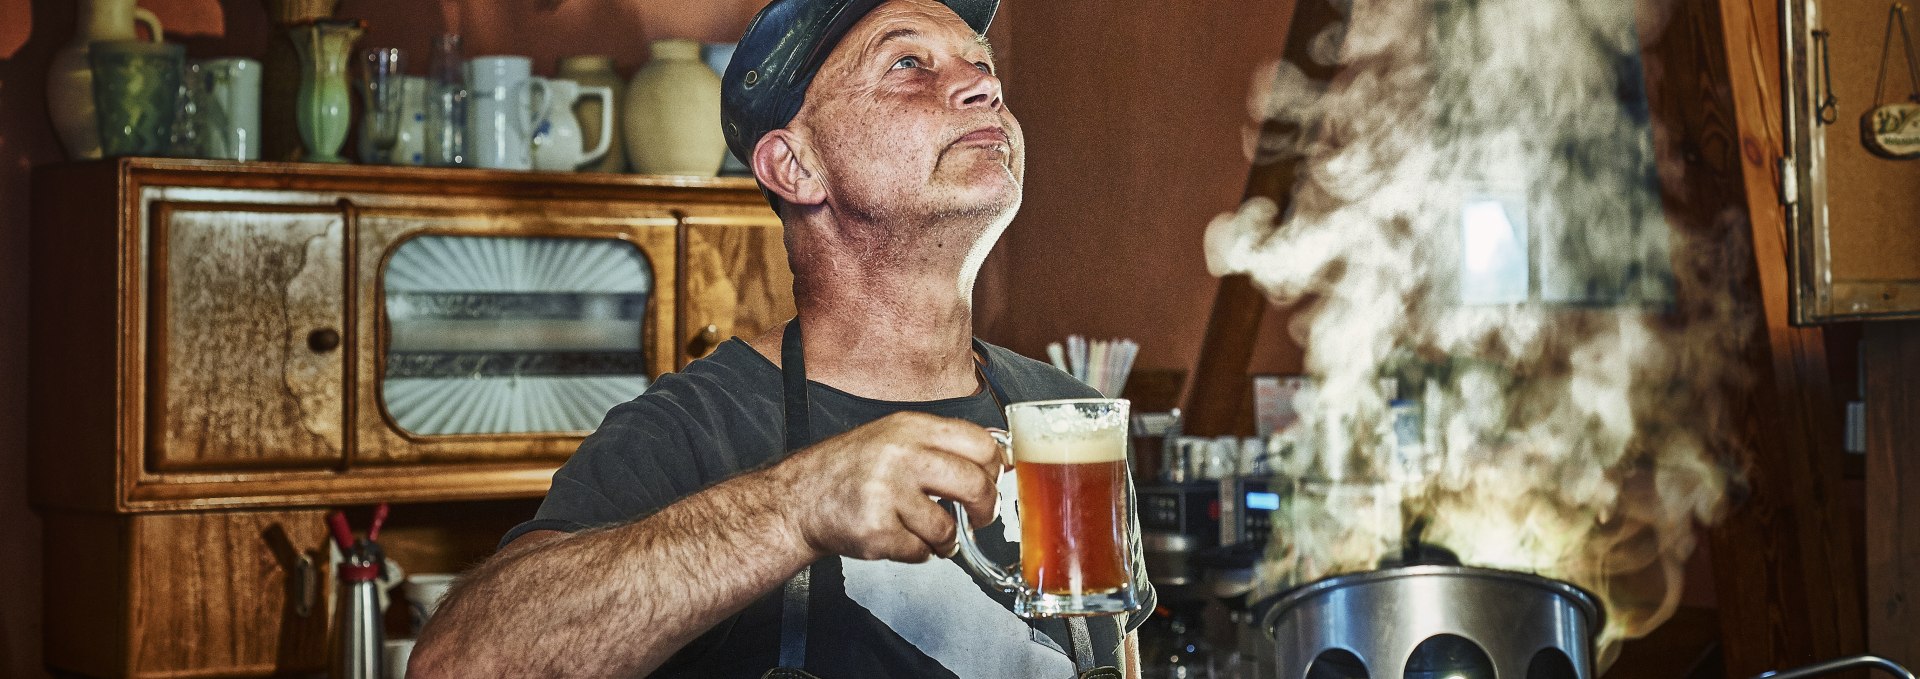 Die Kunst des Bierbrauens hat eine lange Tradition in MV, © TMV/pocha.de